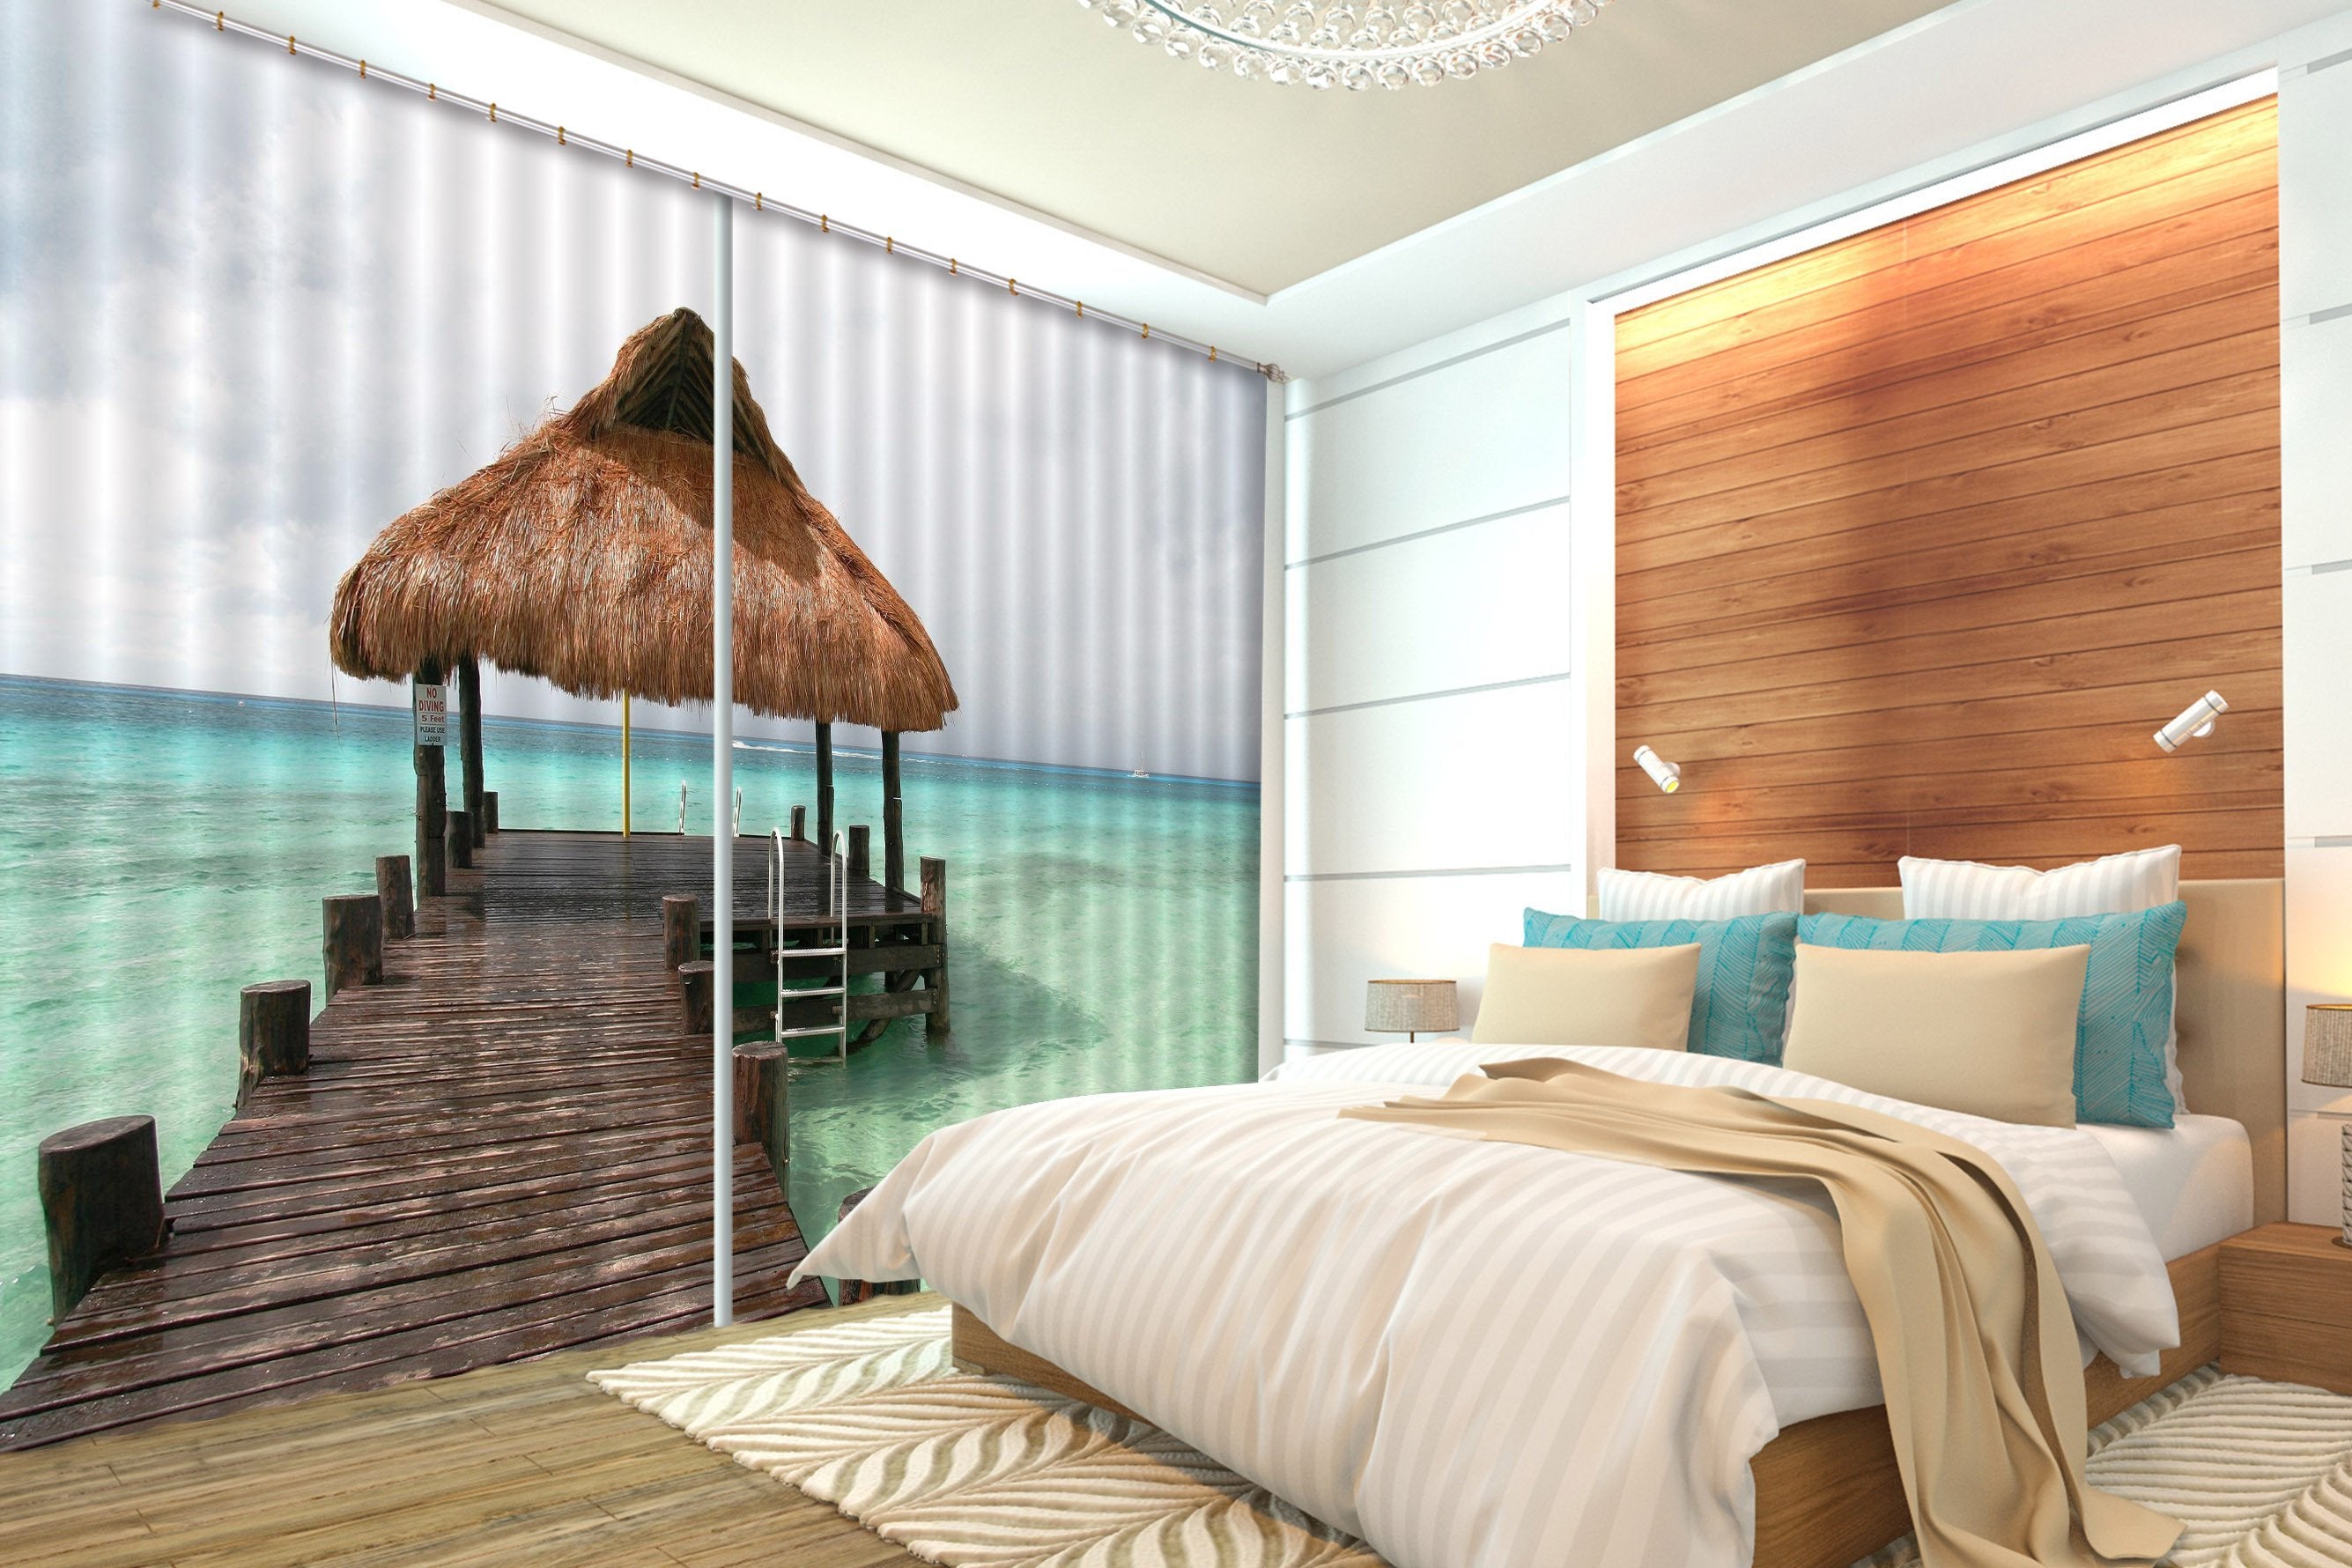 3D Sea Thatched Pavilion 252 Curtains Drapes Wallpaper AJ Wallpaper 